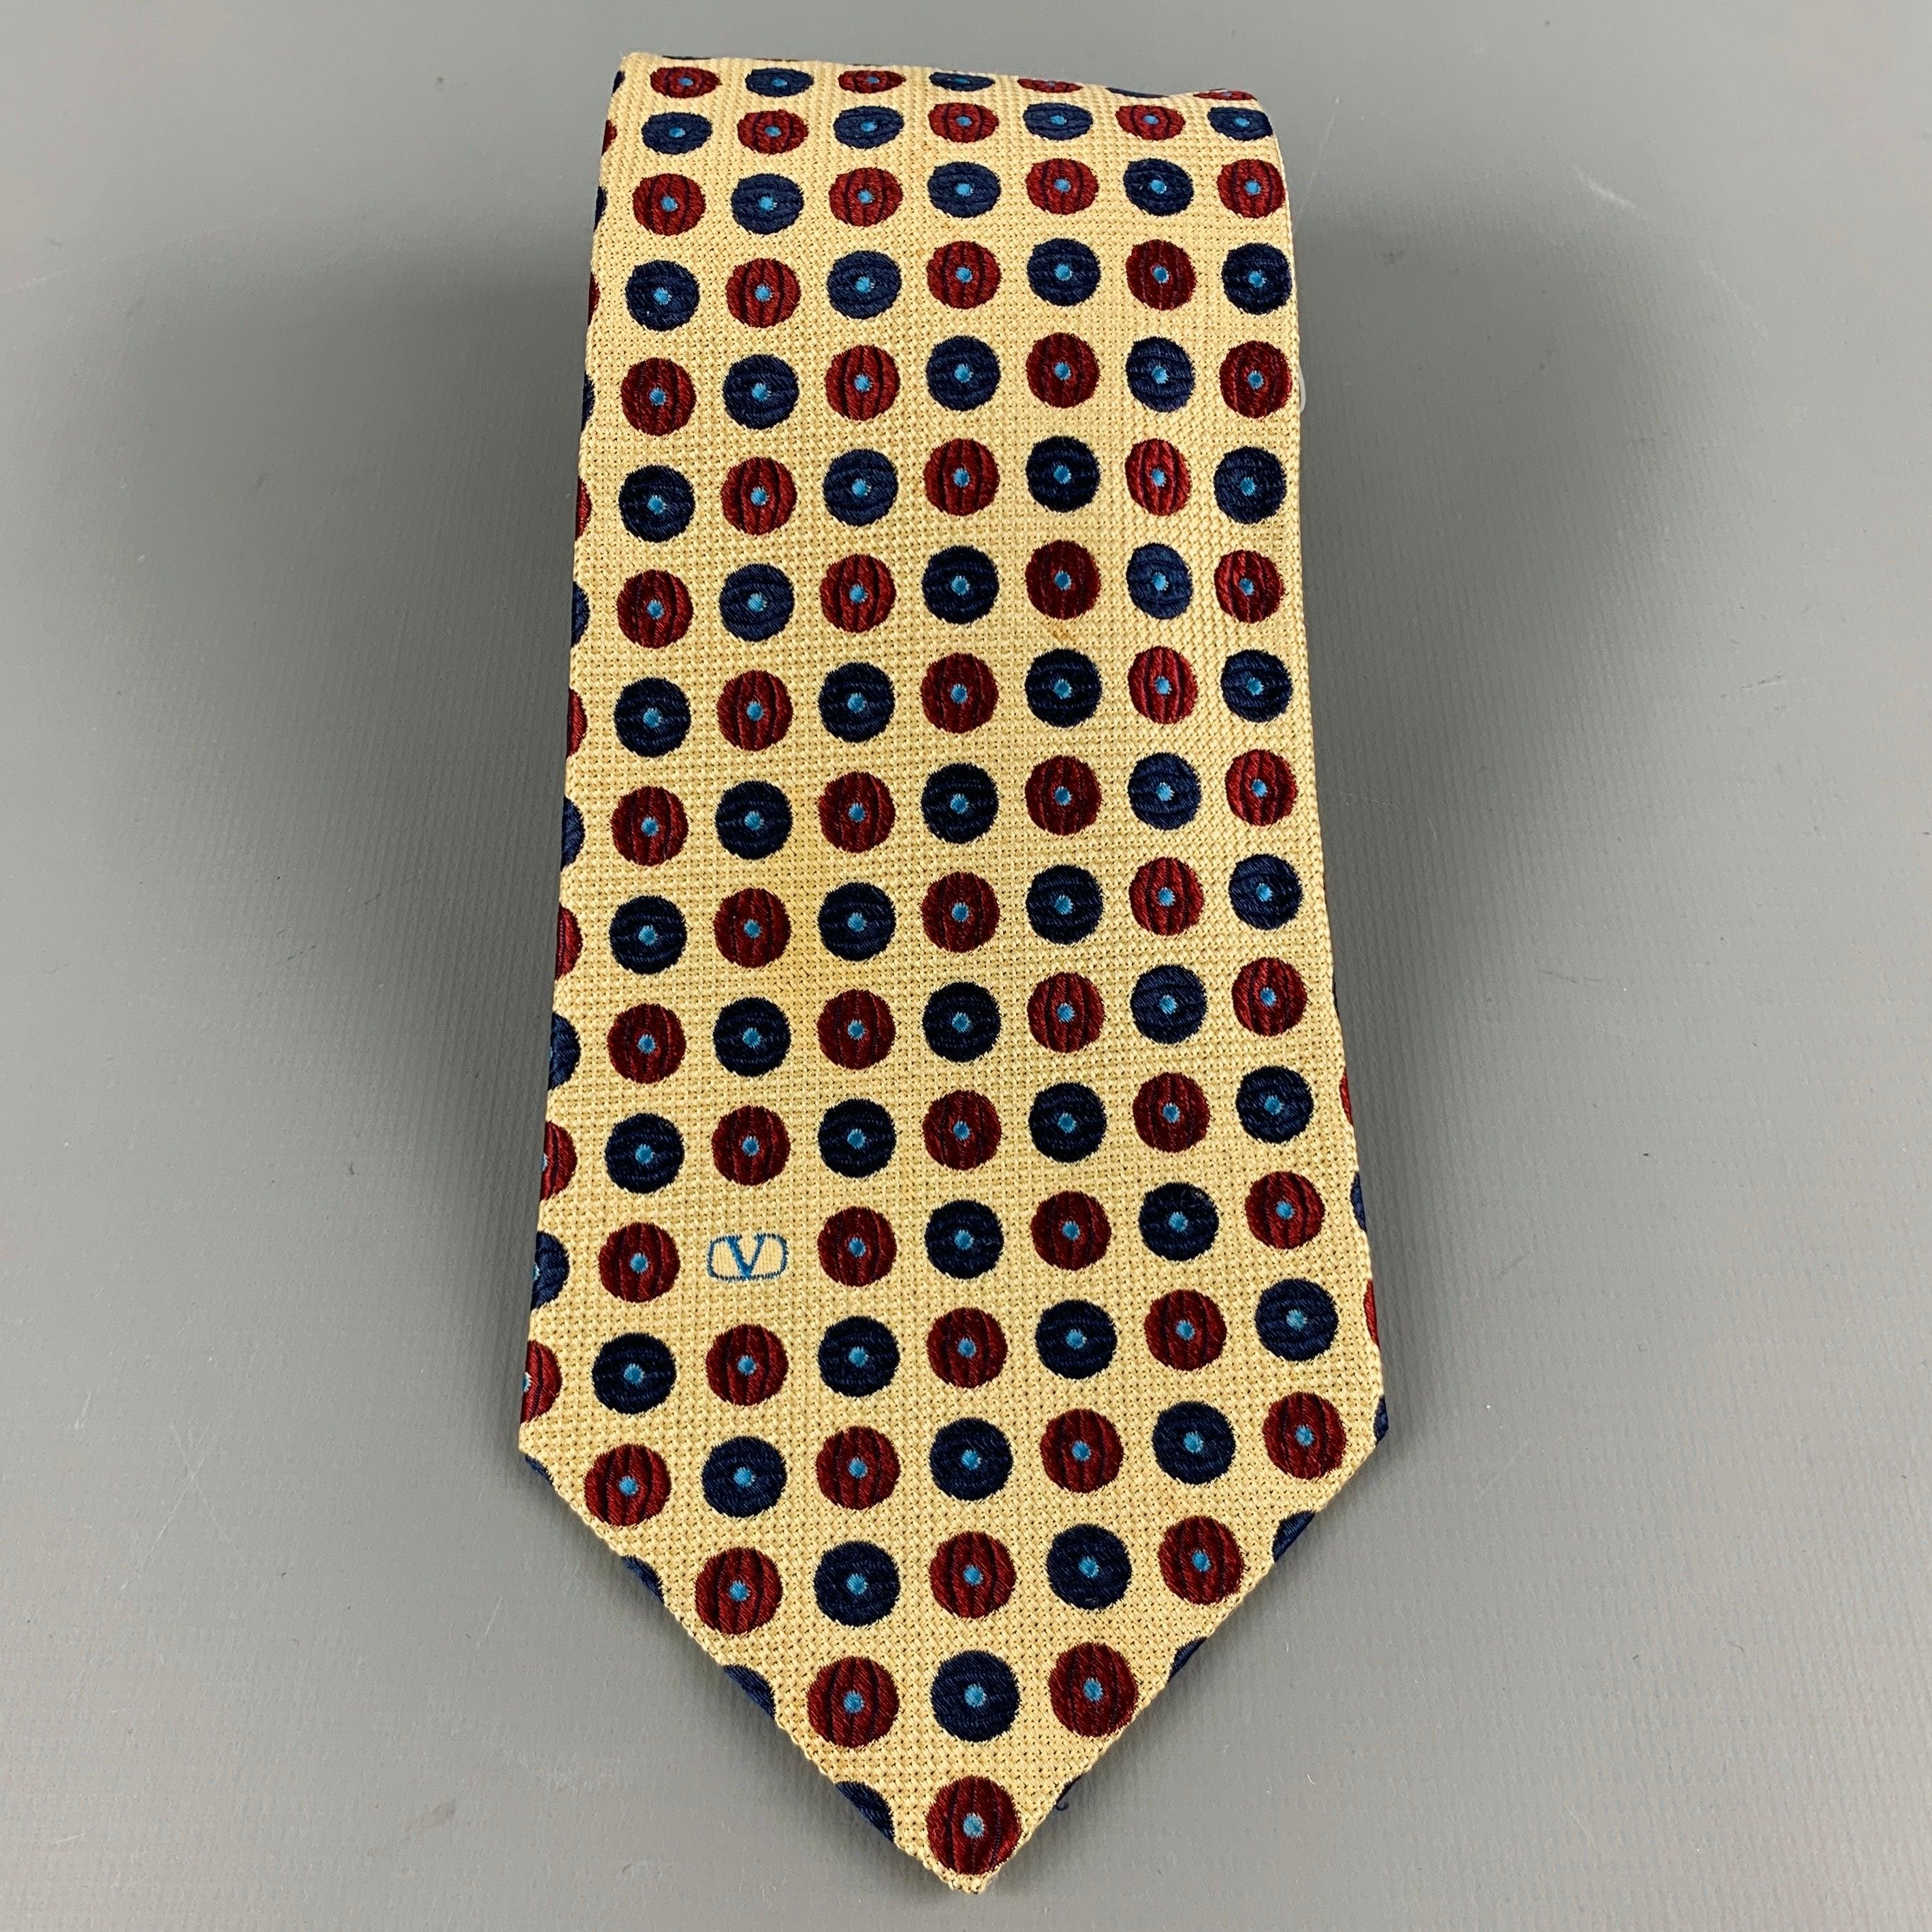 Vintage Valentino
cravate dans un
Tissu de soie jaune présentant un jacquard de points rouges et bleus et le monogramme signature de Valentino. Fabriqué en Italie. Excellent état. 

Mesures : 
  Largeur : 3,5 pouces Longueur : 57 pouces 
  
  
